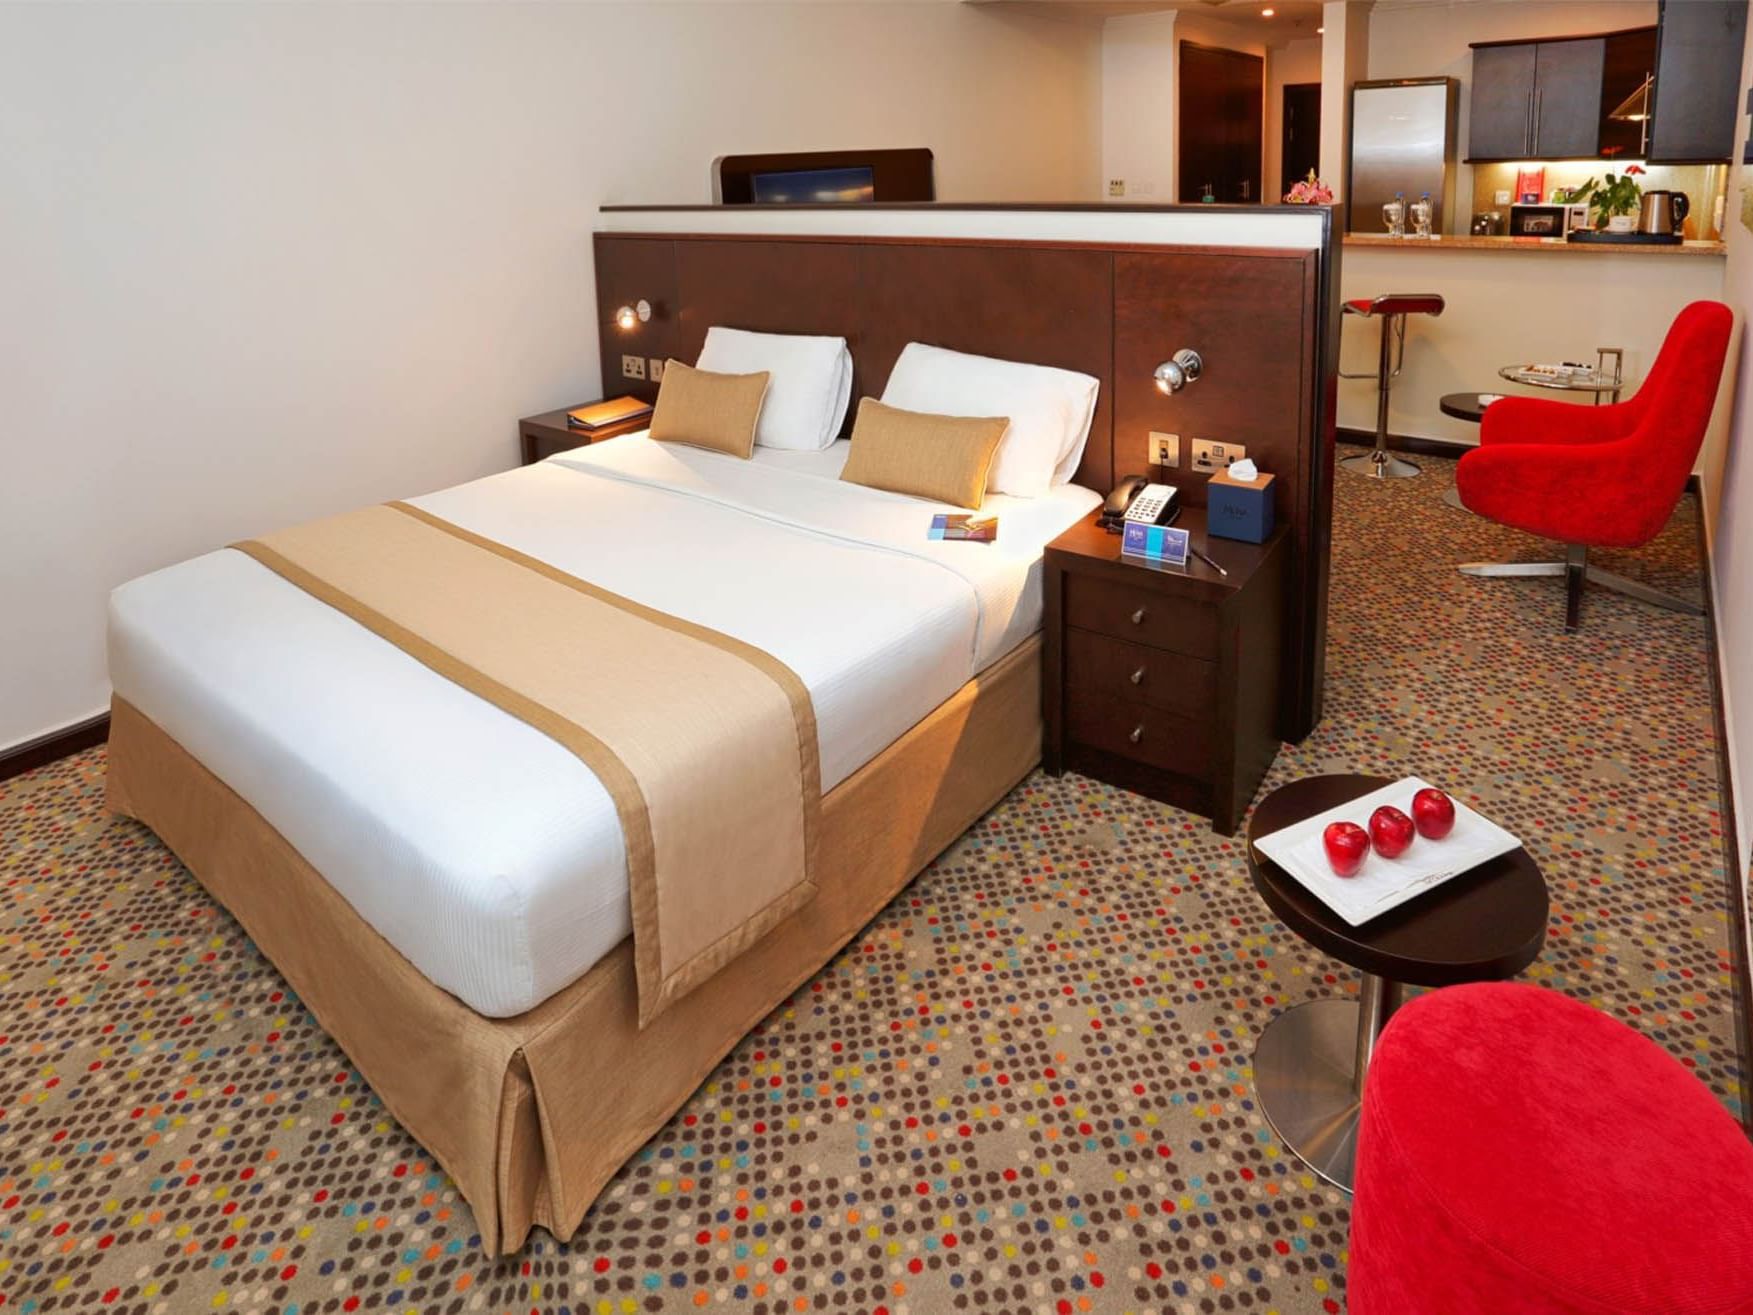 Bedroom of Junior Suite at Mena ApartHotel Albarsha Dubai